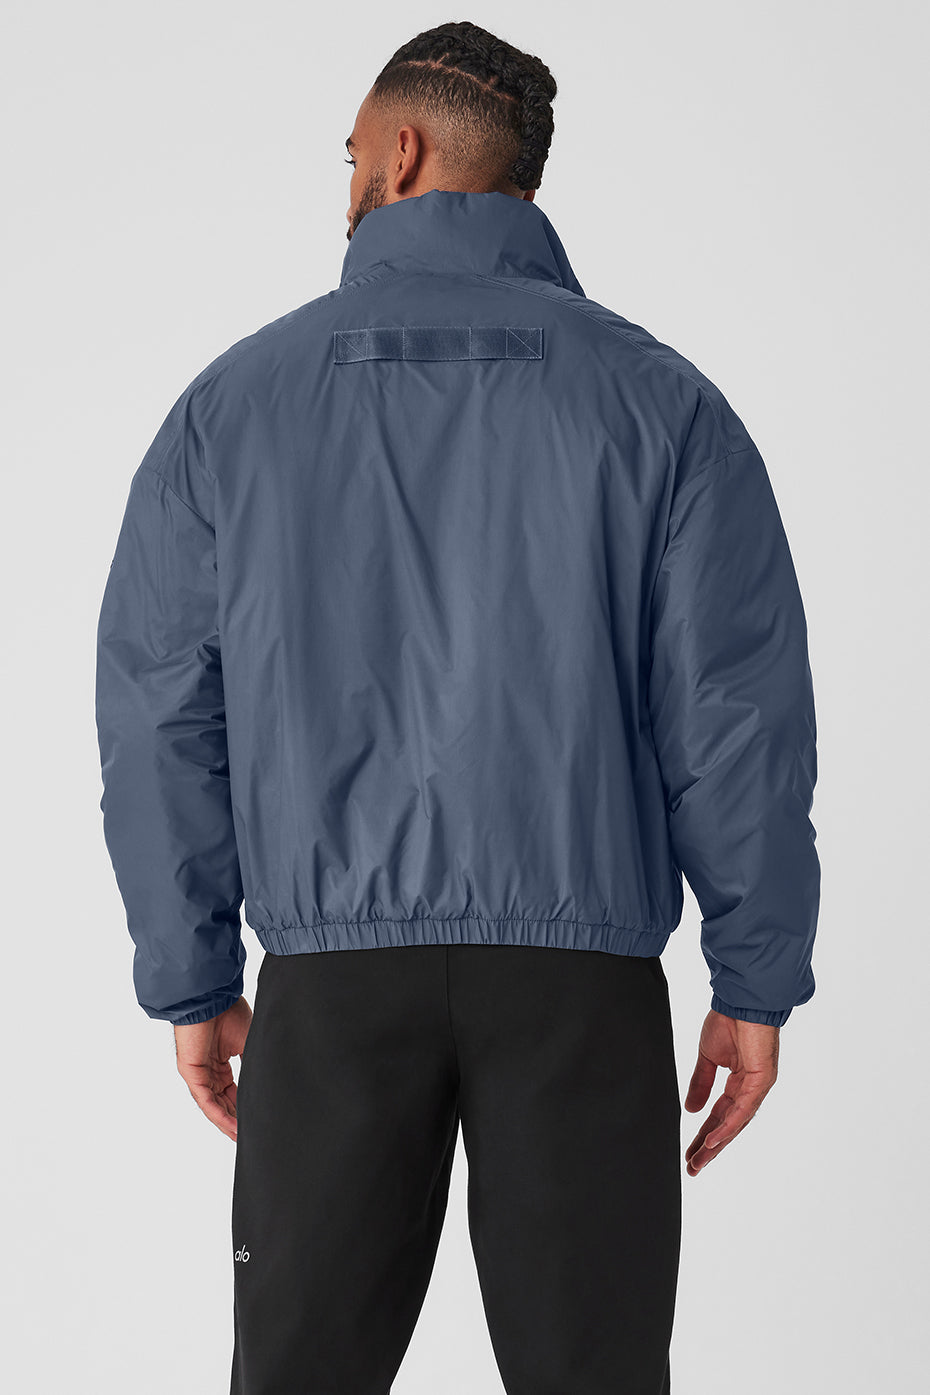 Latitude Light Weight 1/2 Zip Pullover Jacket - Bluestone